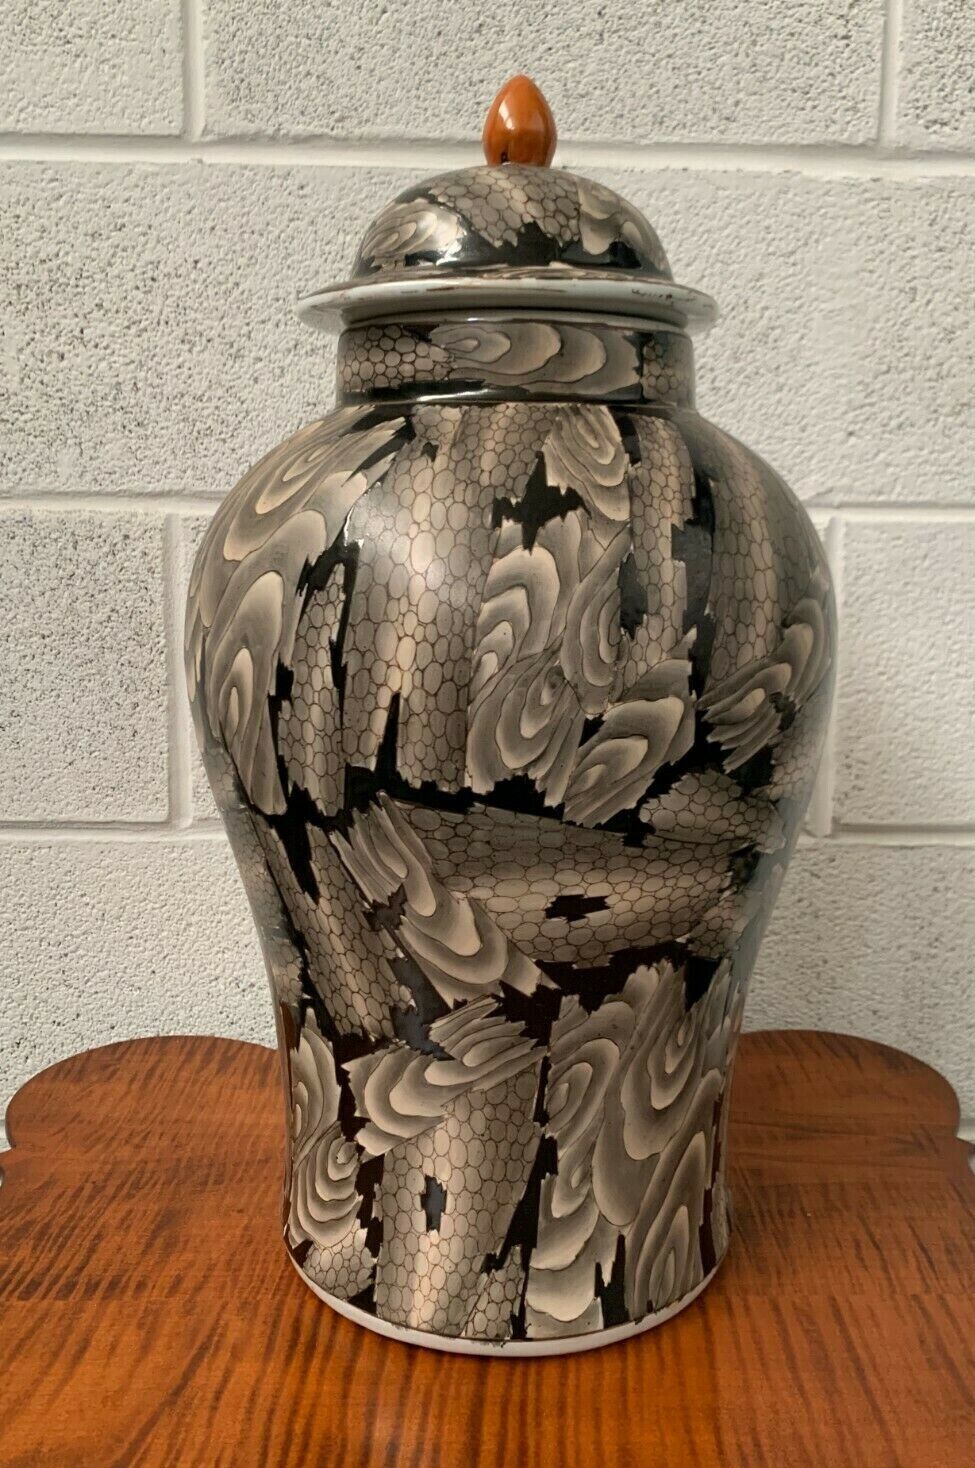 A Large Vintage Enamel Chinese Porcelain Covered Jar